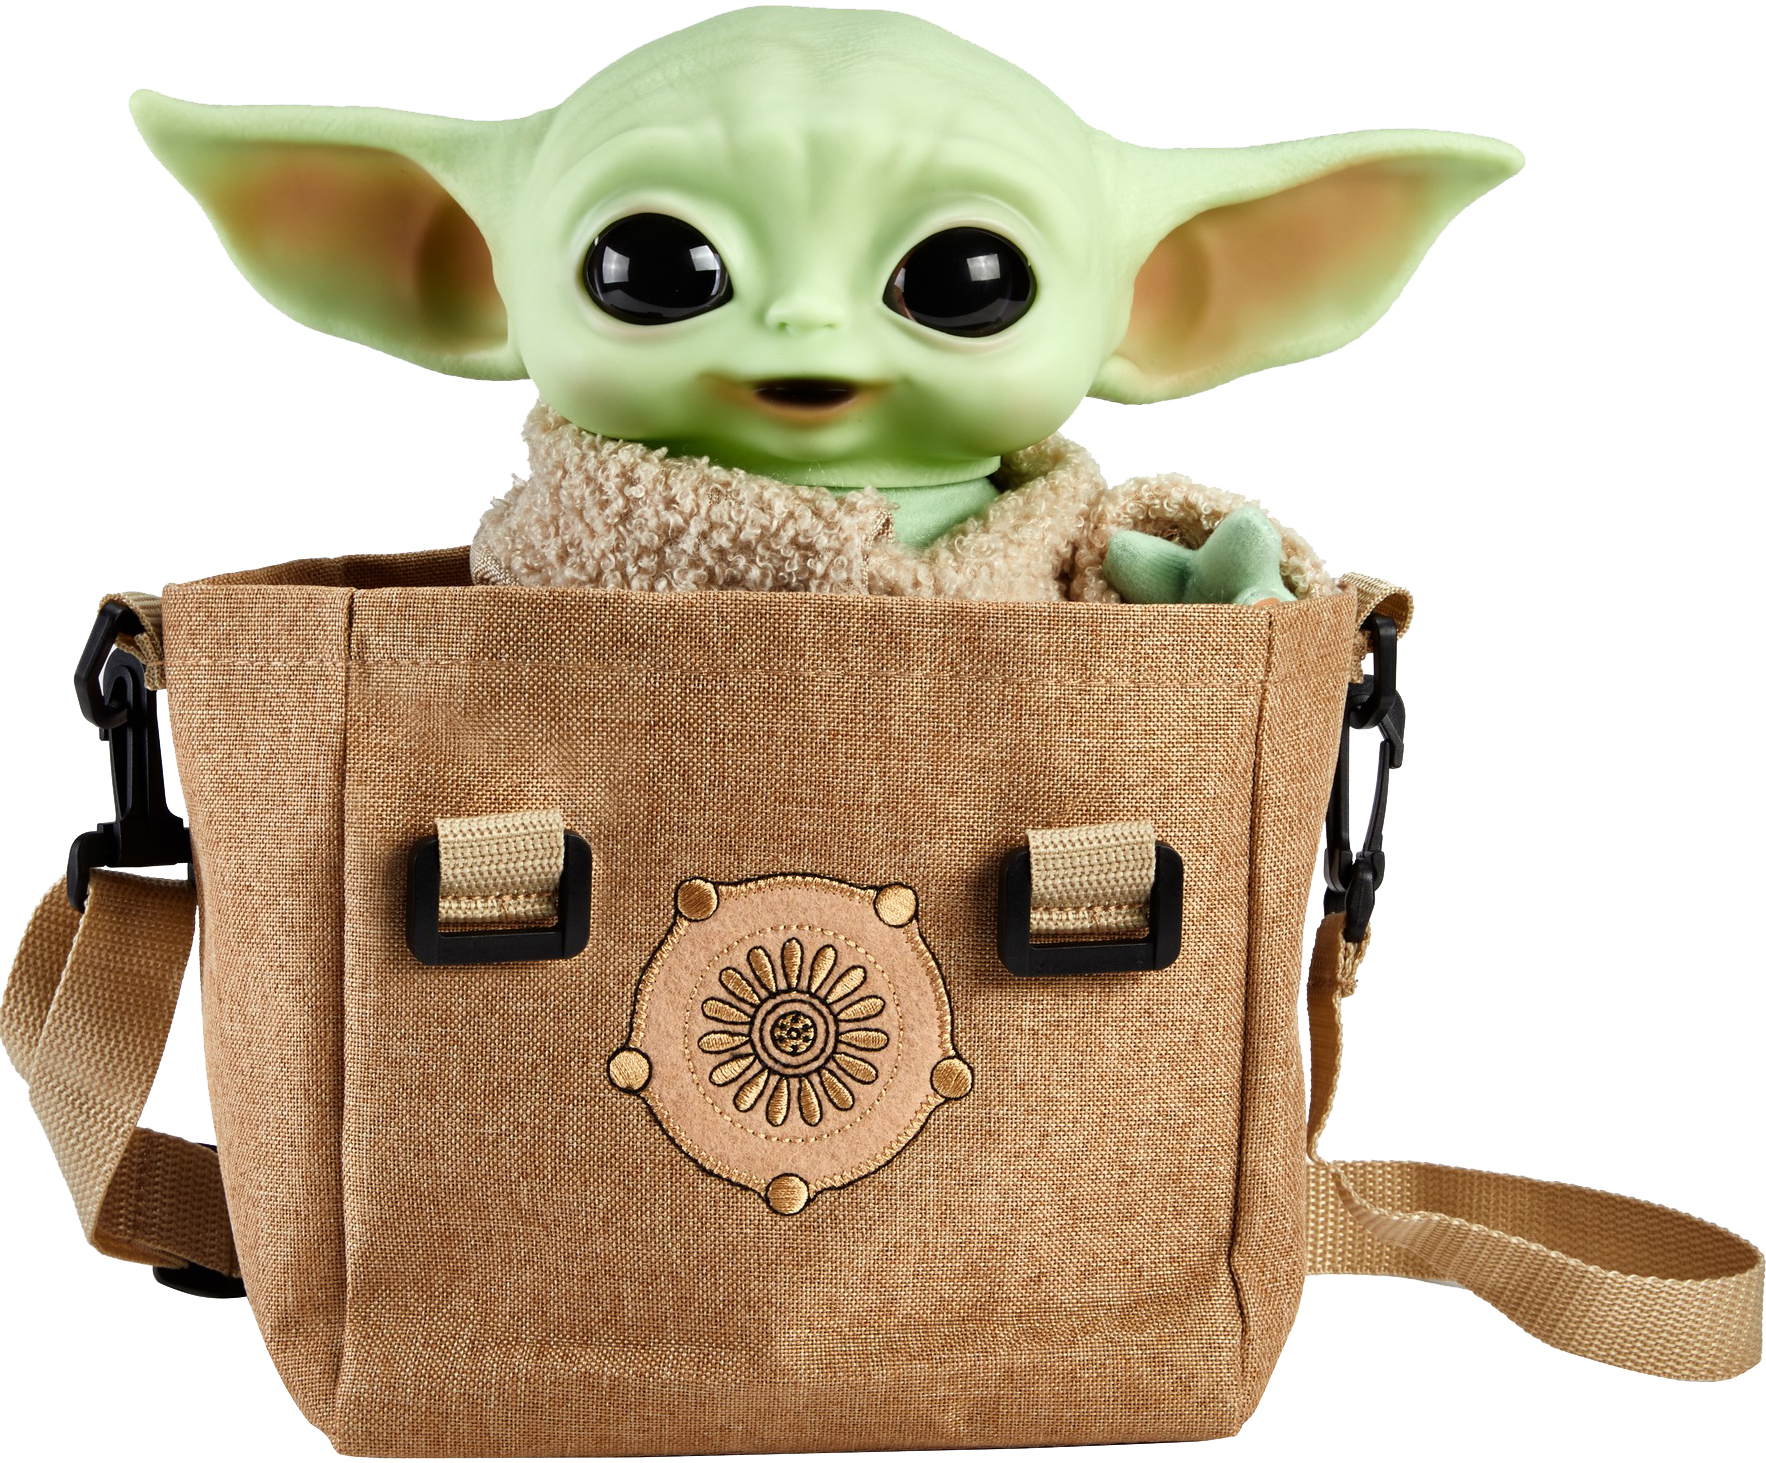 Акция на Интерактивный Малыш Йода Star Wars из сериала Звездные войны: Мандалорець в дорожной сумке 28 см (HBX33) от Rozetka UA